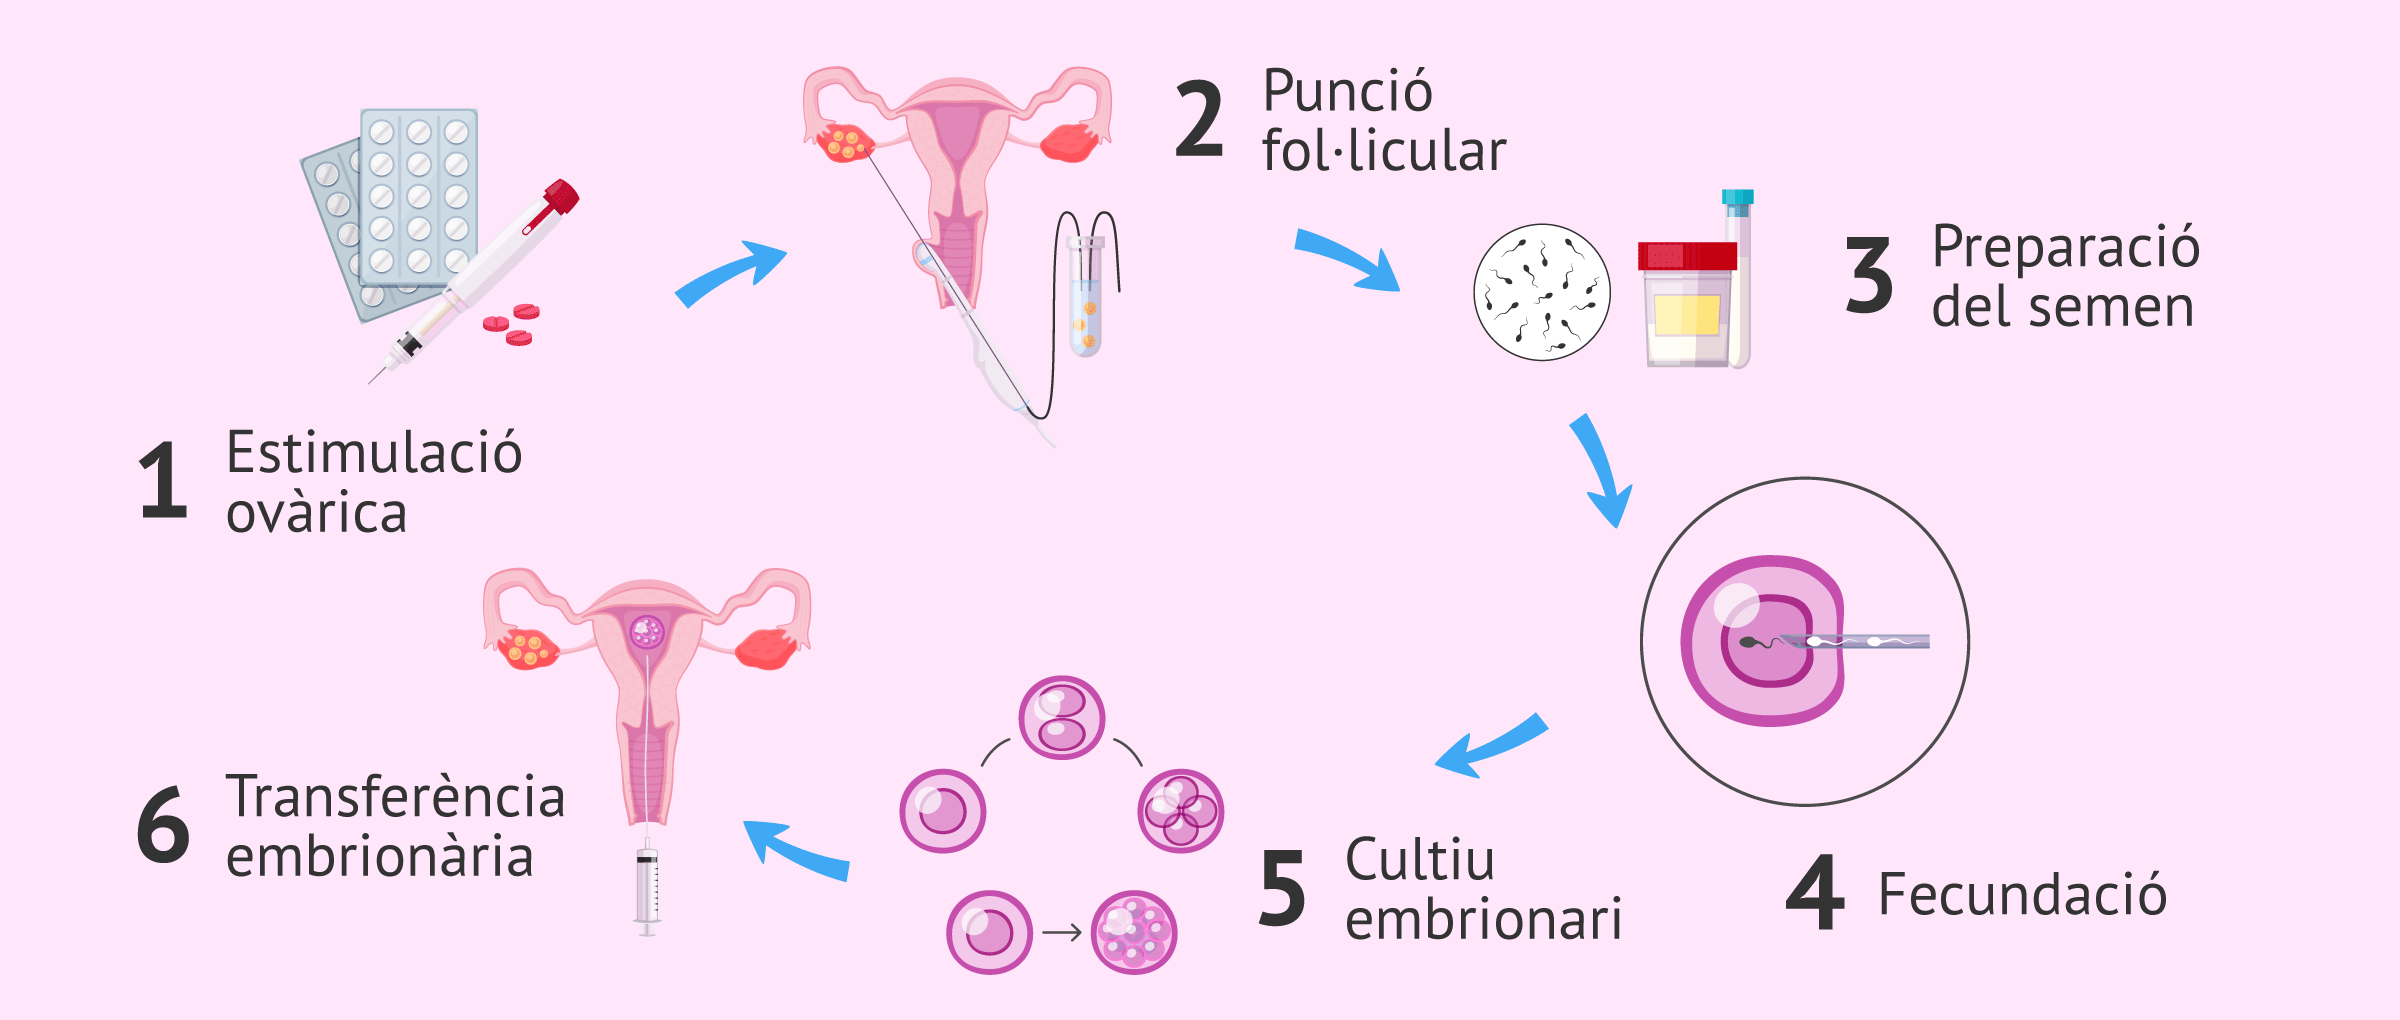 Procés de la fecundació in vitro